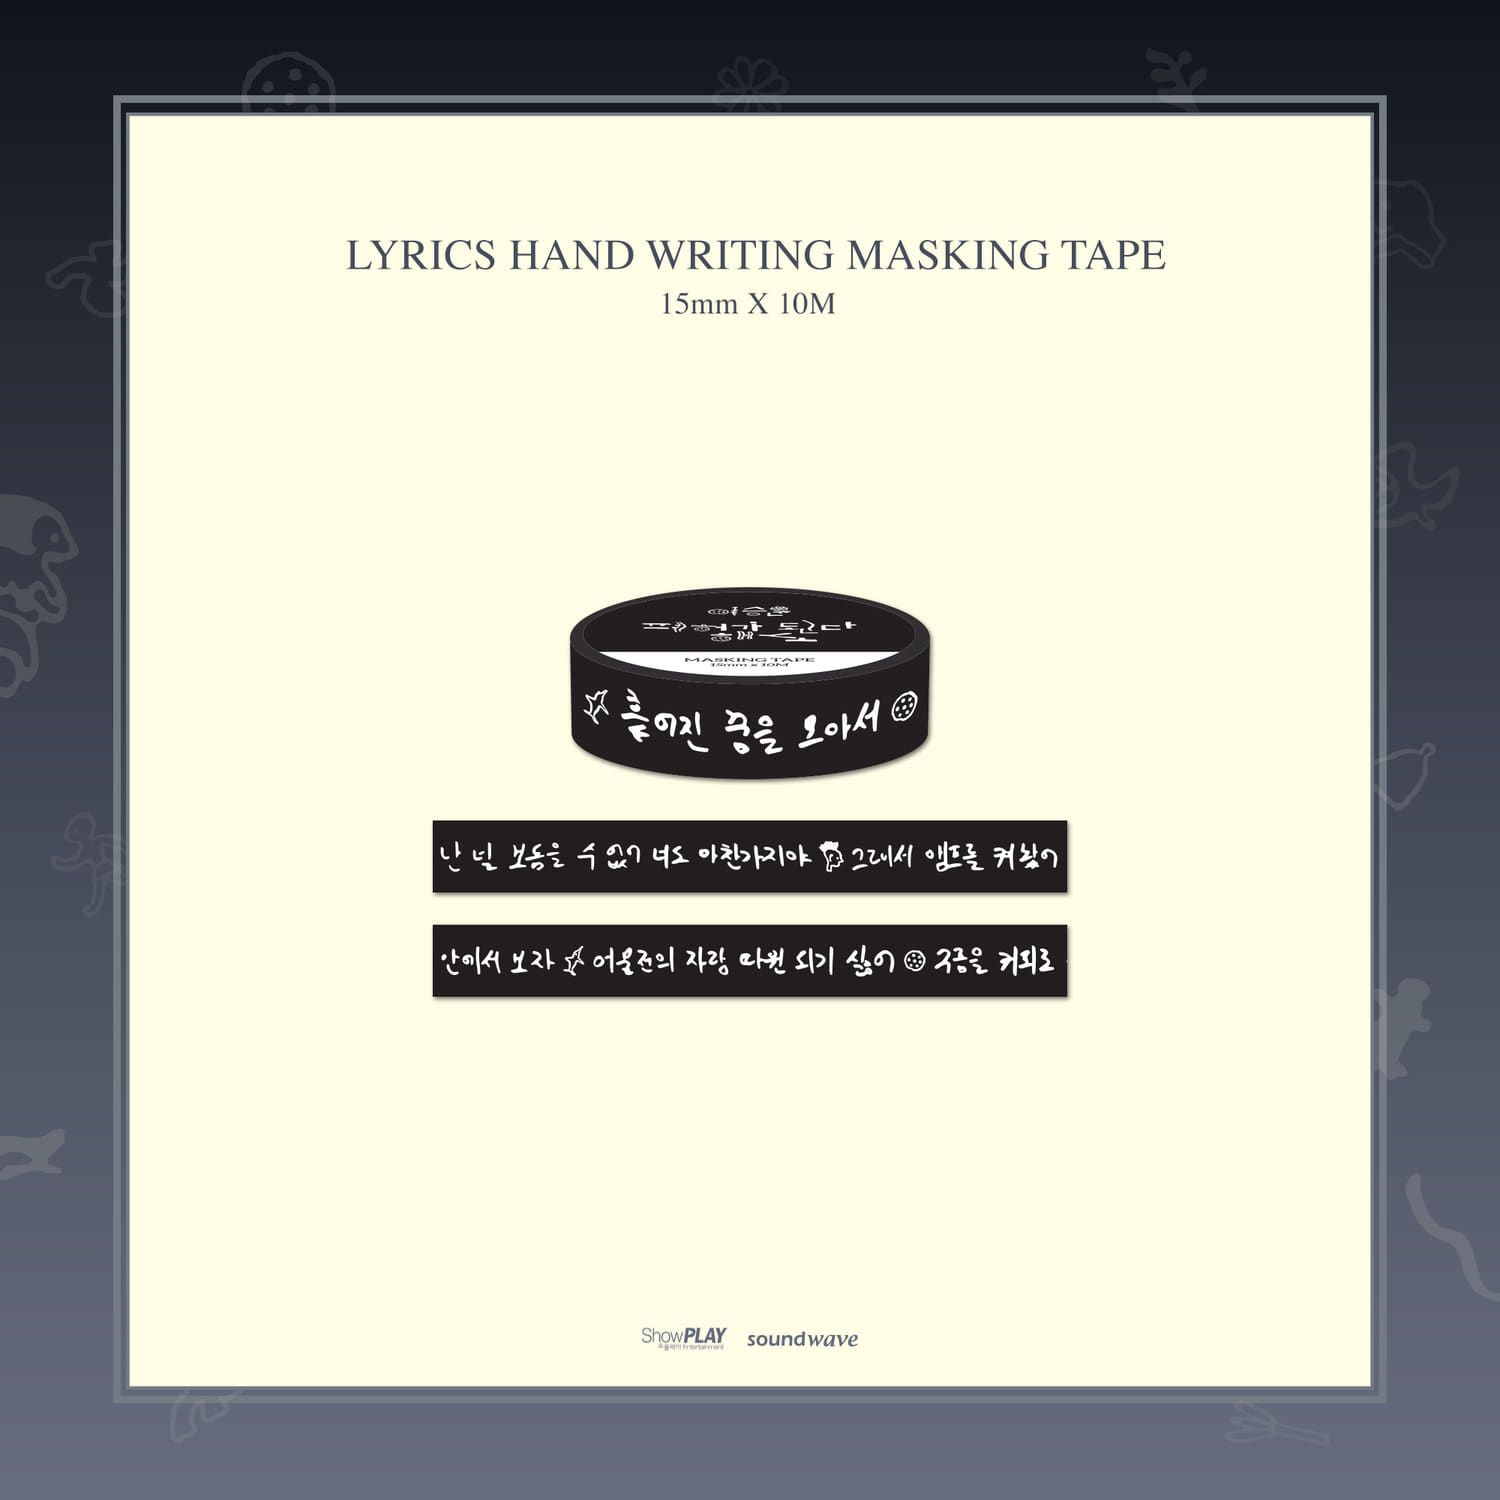 이승윤(Lee Seung Yoon) [폐허가 된다 해도] Official MD - 가사 손글씨 마스킹 테이프 LYRICS HAND WRITING MASKING TAPE